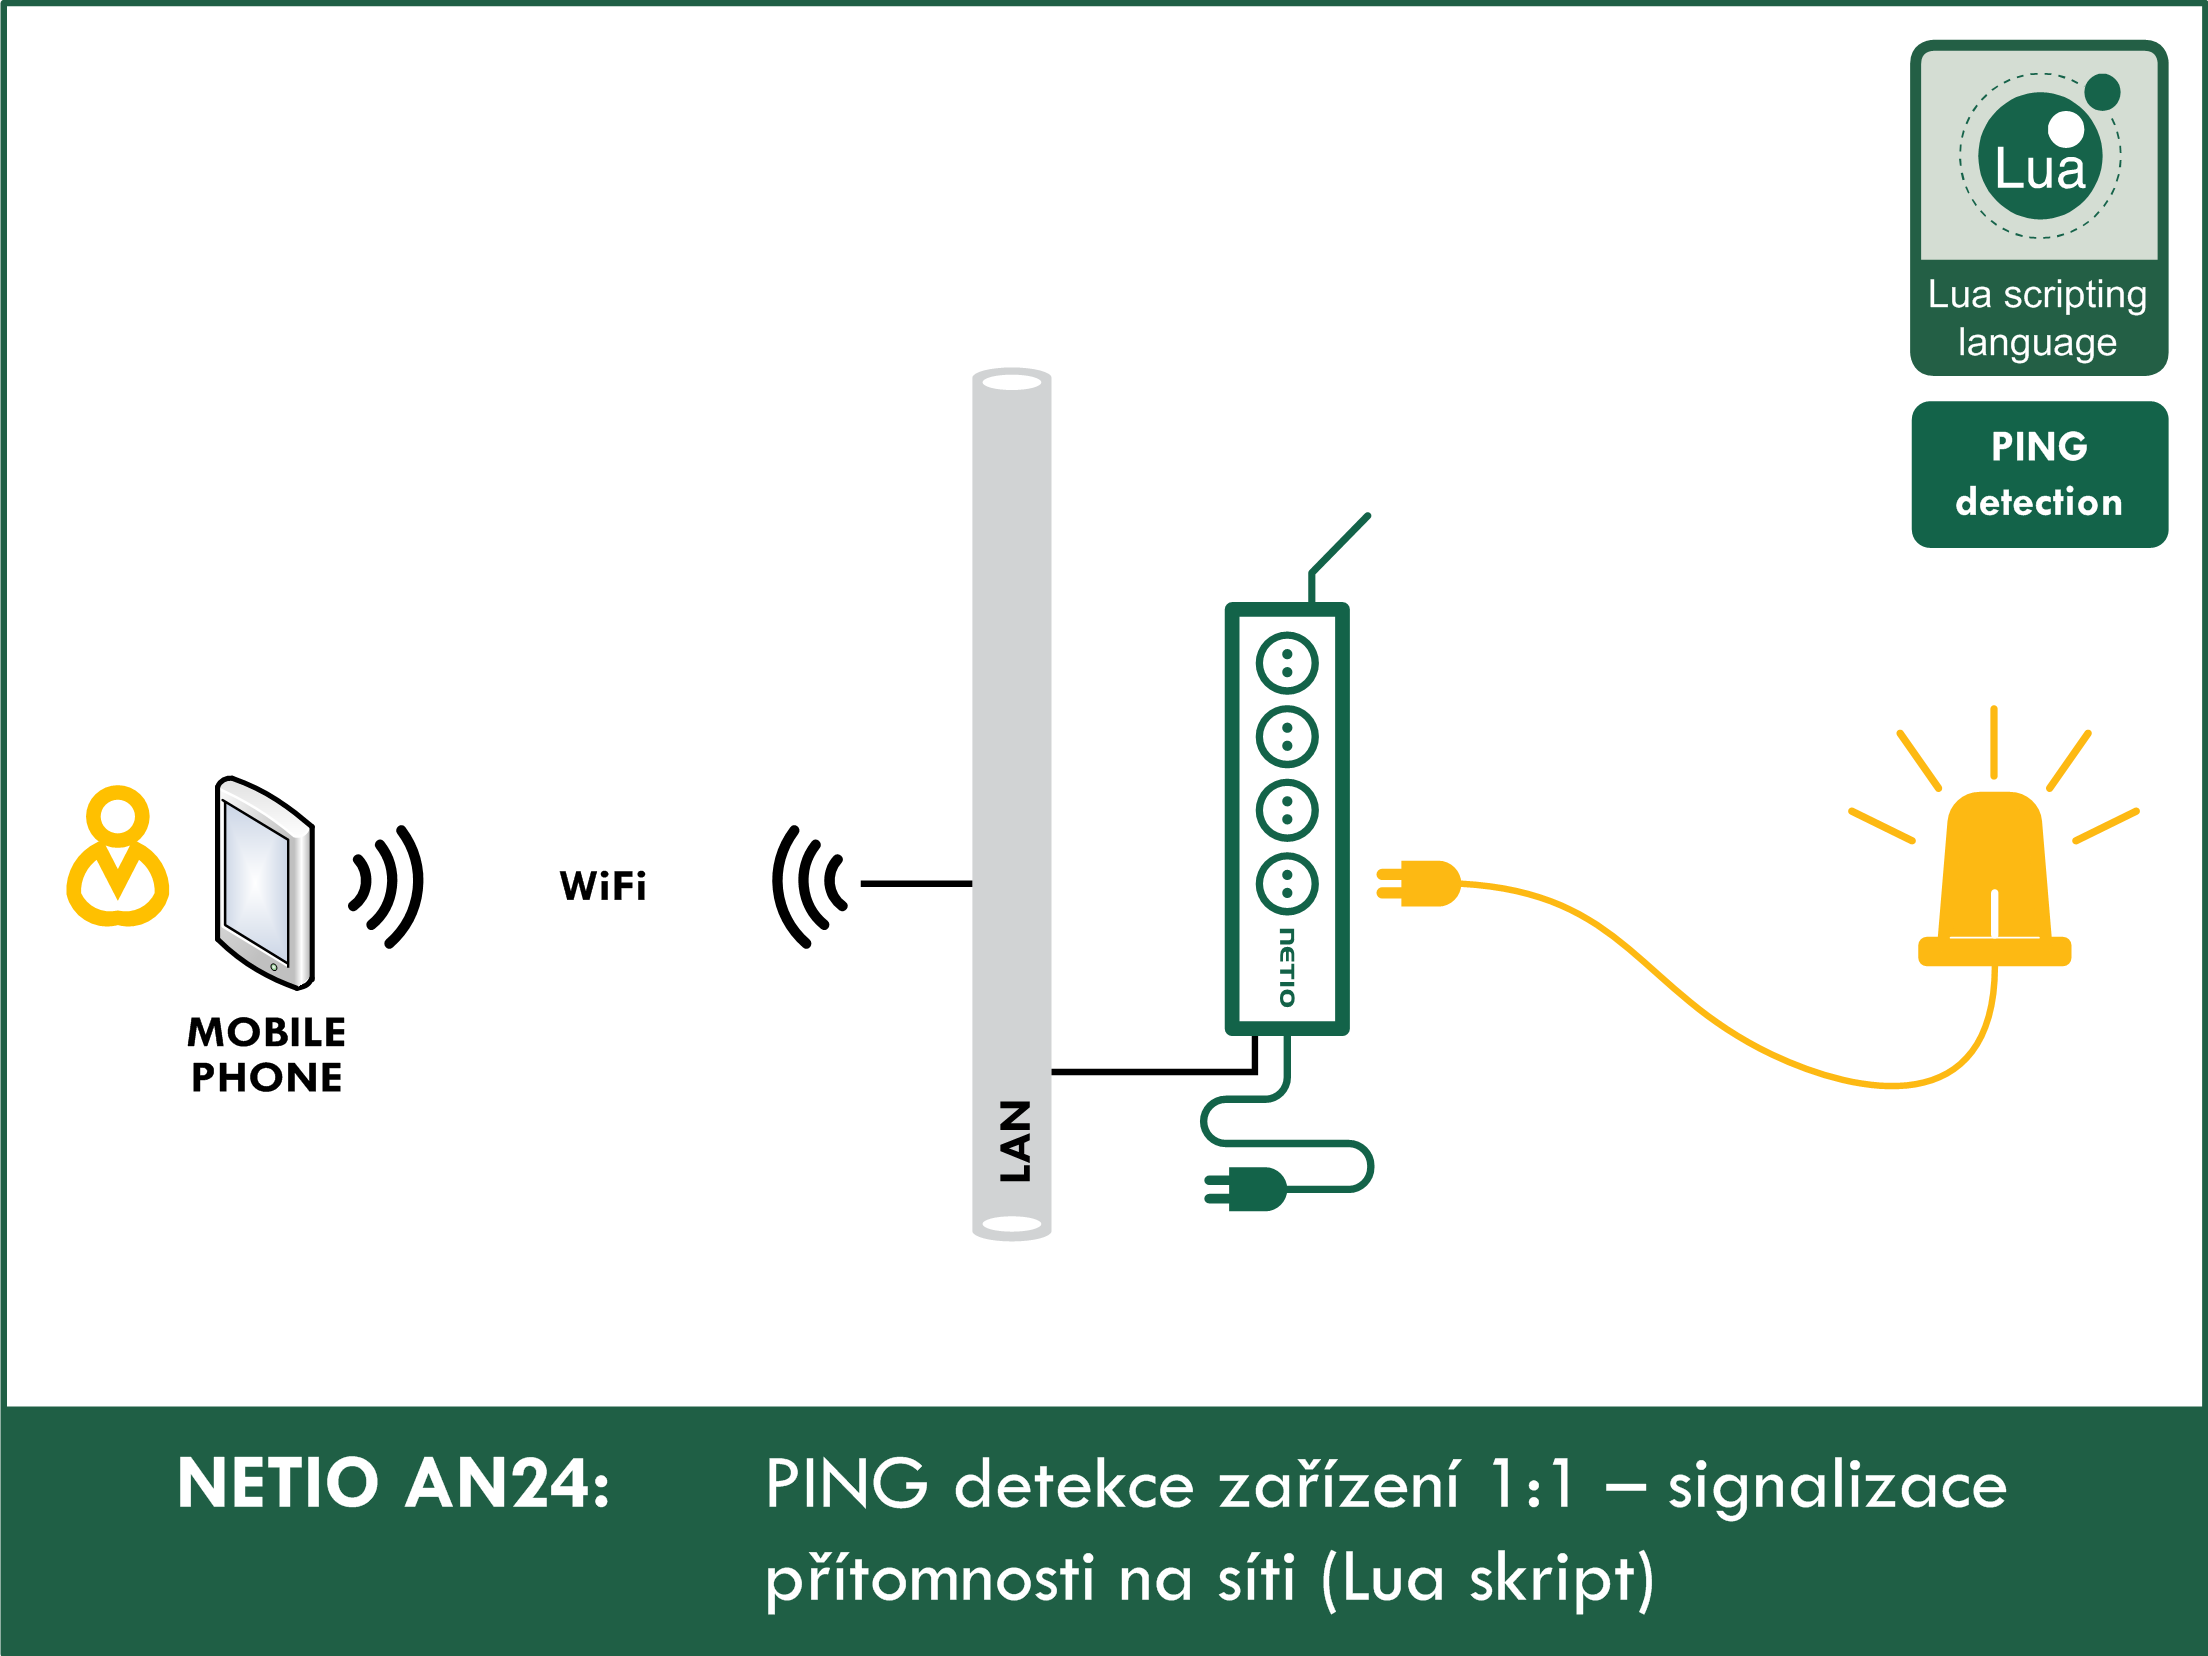 PING detekce zařízení 1:1 - signalizace přítomnosti na síti (Lua skript)